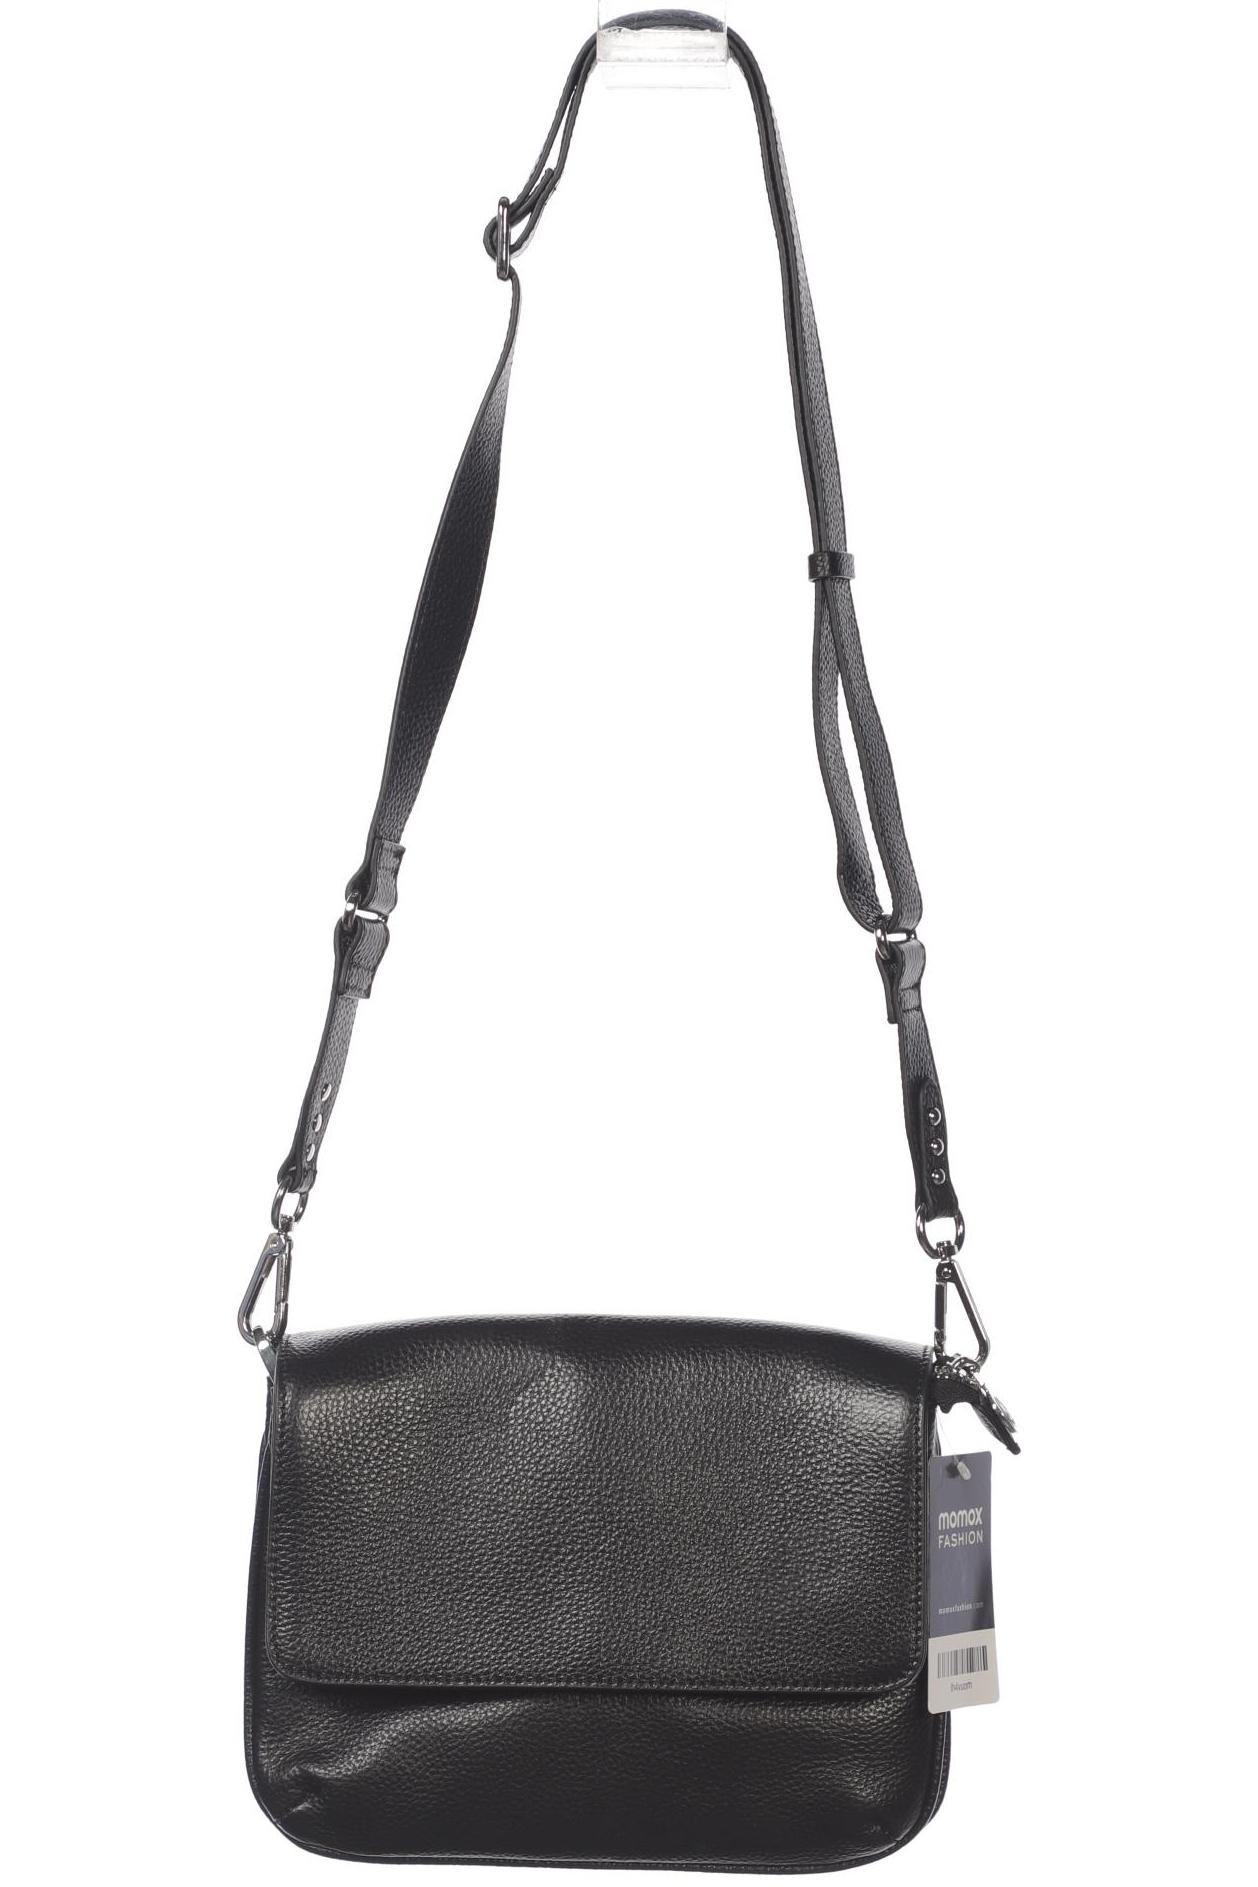 Rosemunde Damen Handtasche, schwarz, Gr. von Rosemunde